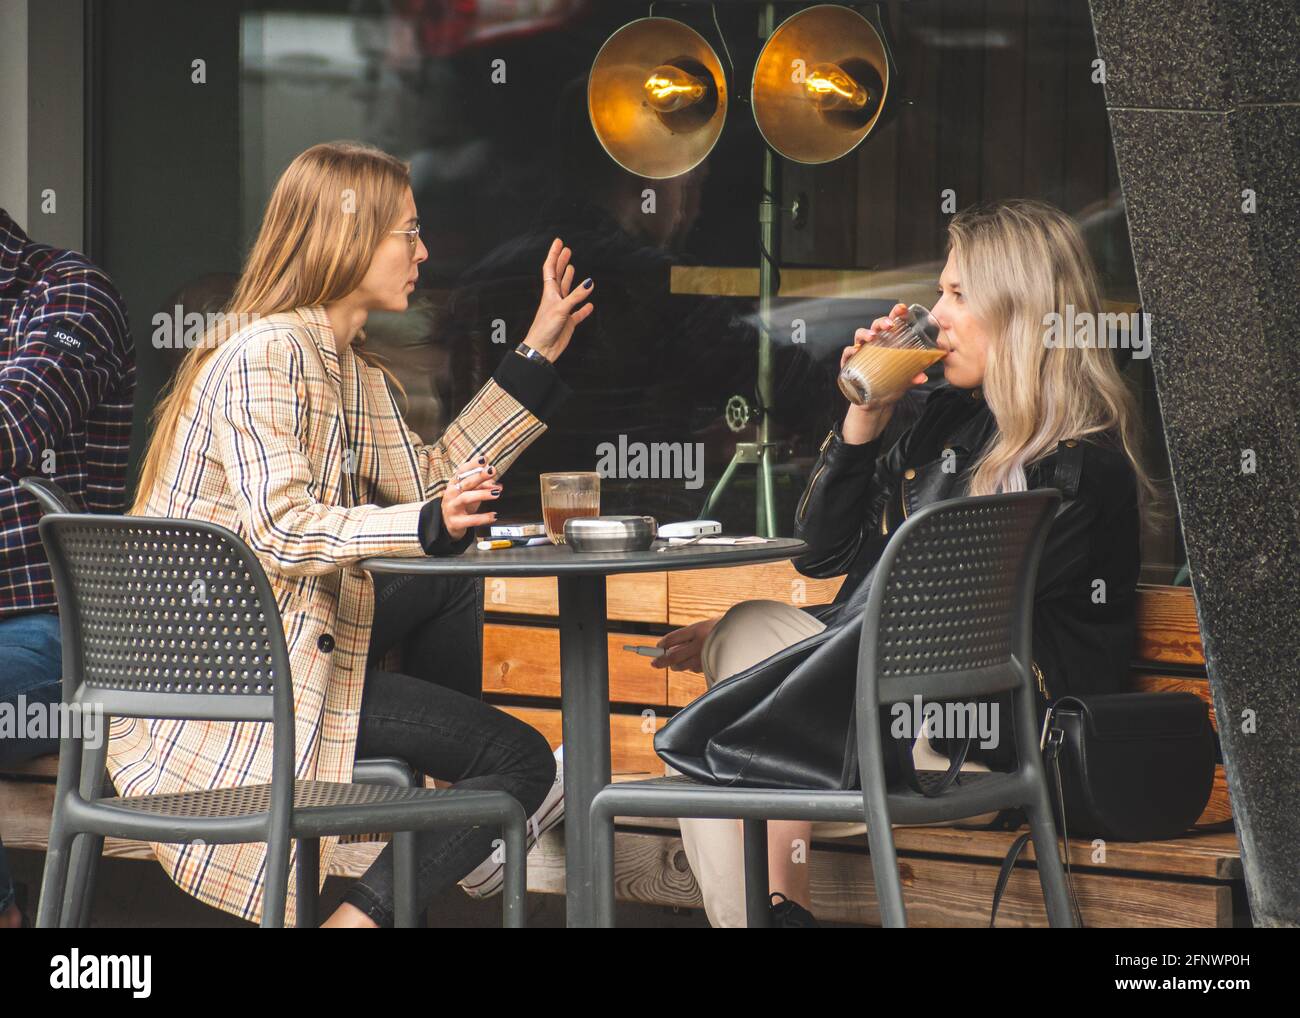 Deux belles filles sans masque, assis et buvant du café dans un bar, un café ou un restaurant en plein air après des restrictions de quarantaine Banque D'Images